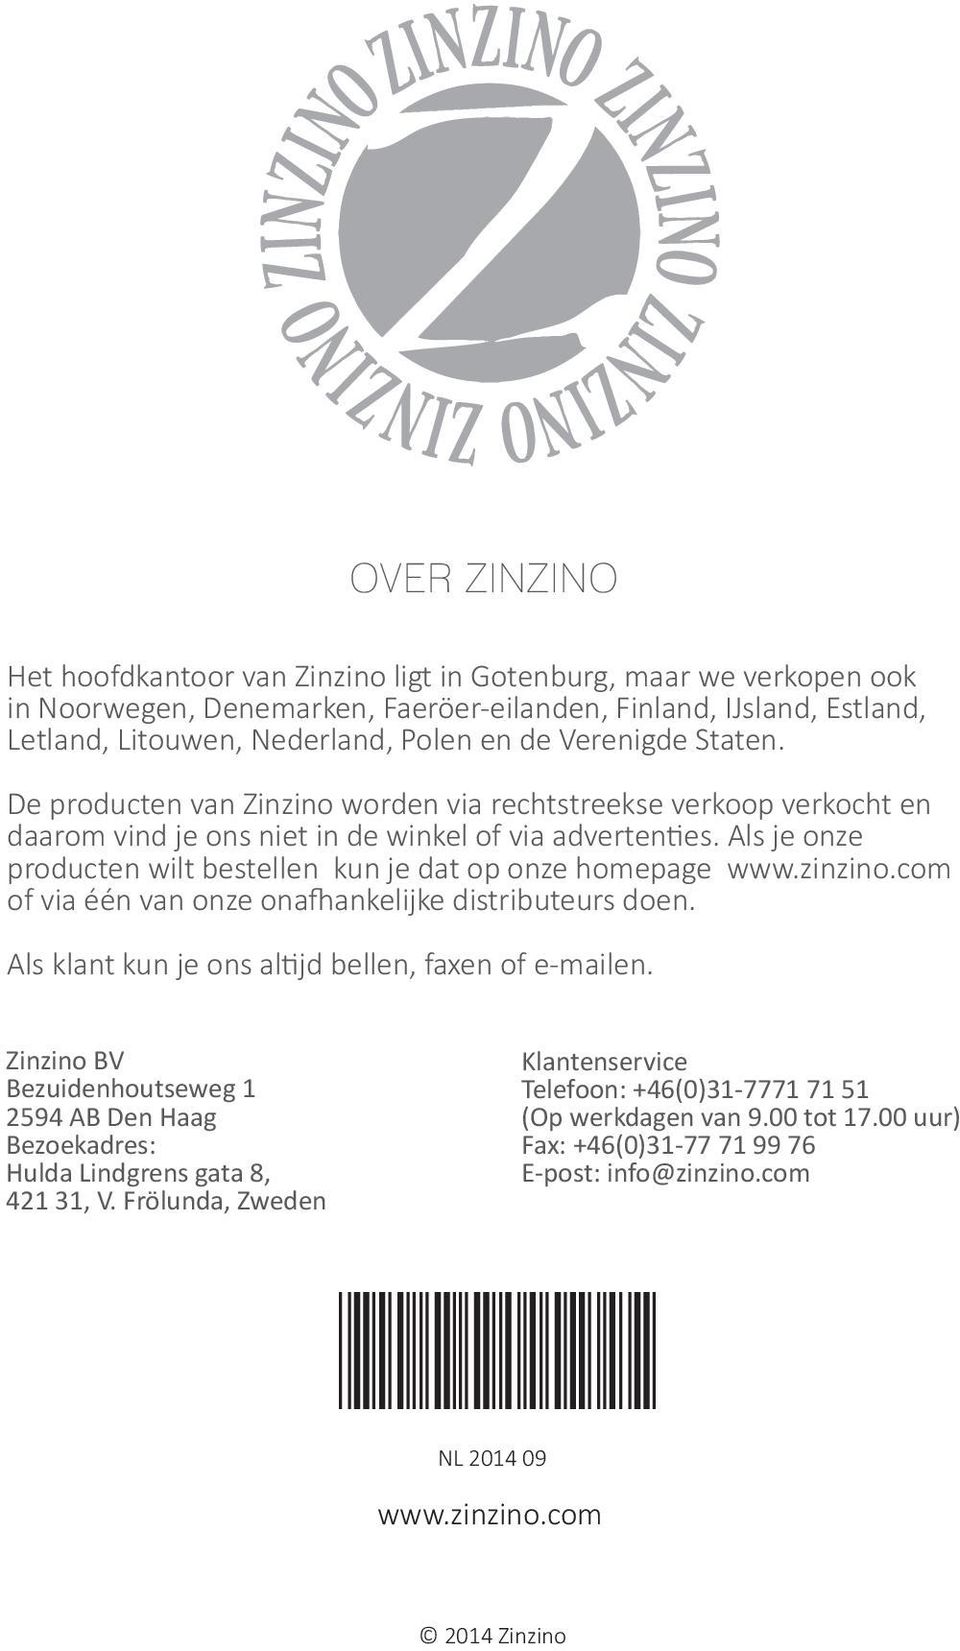 Als je onze producten wilt bestellen kun je dat op onze homepage www.zinzino.com of via één van onze onafhankelijke distributeurs doen. Als klant kun je ons altijd bellen, faxen of e-mailen.